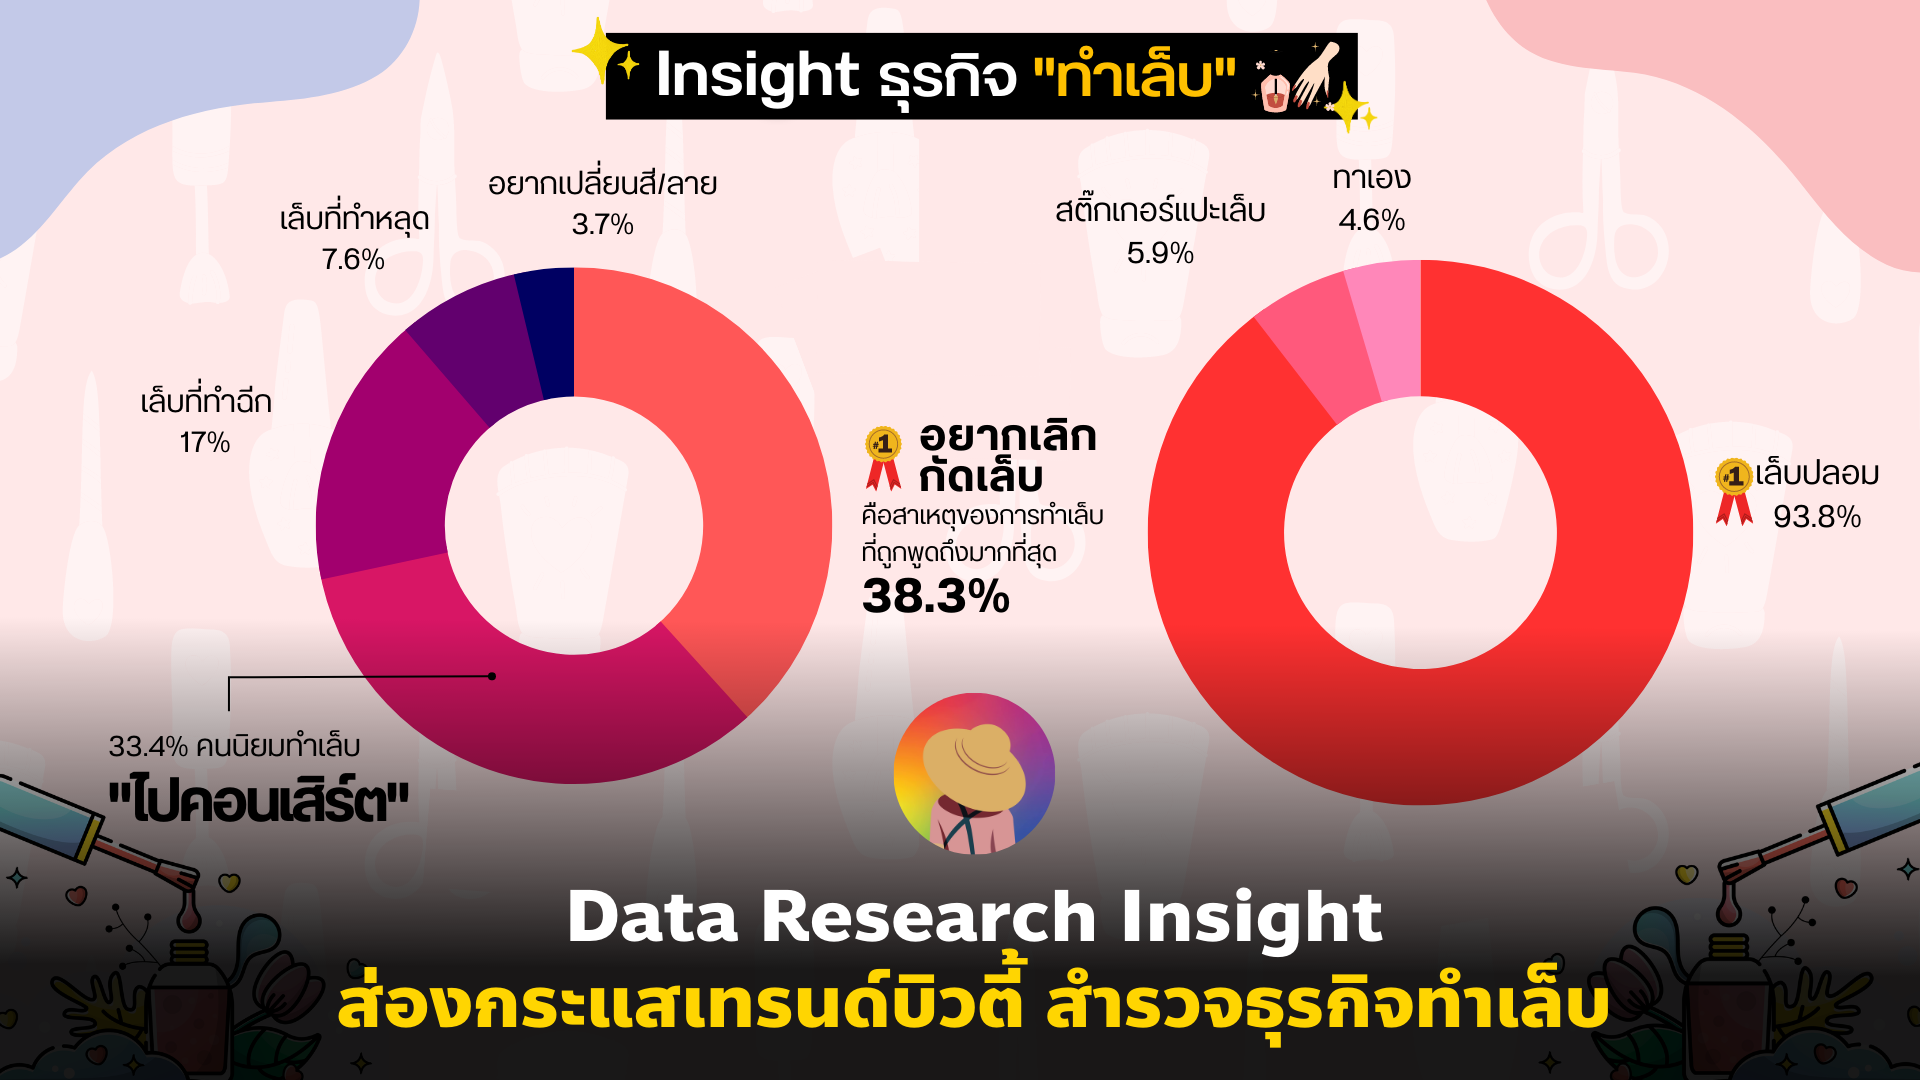 Data Research Insight ส่องกระแสเทรนด์บิวตี้ สำรวจธุรกิจ “ทำเล็บ”